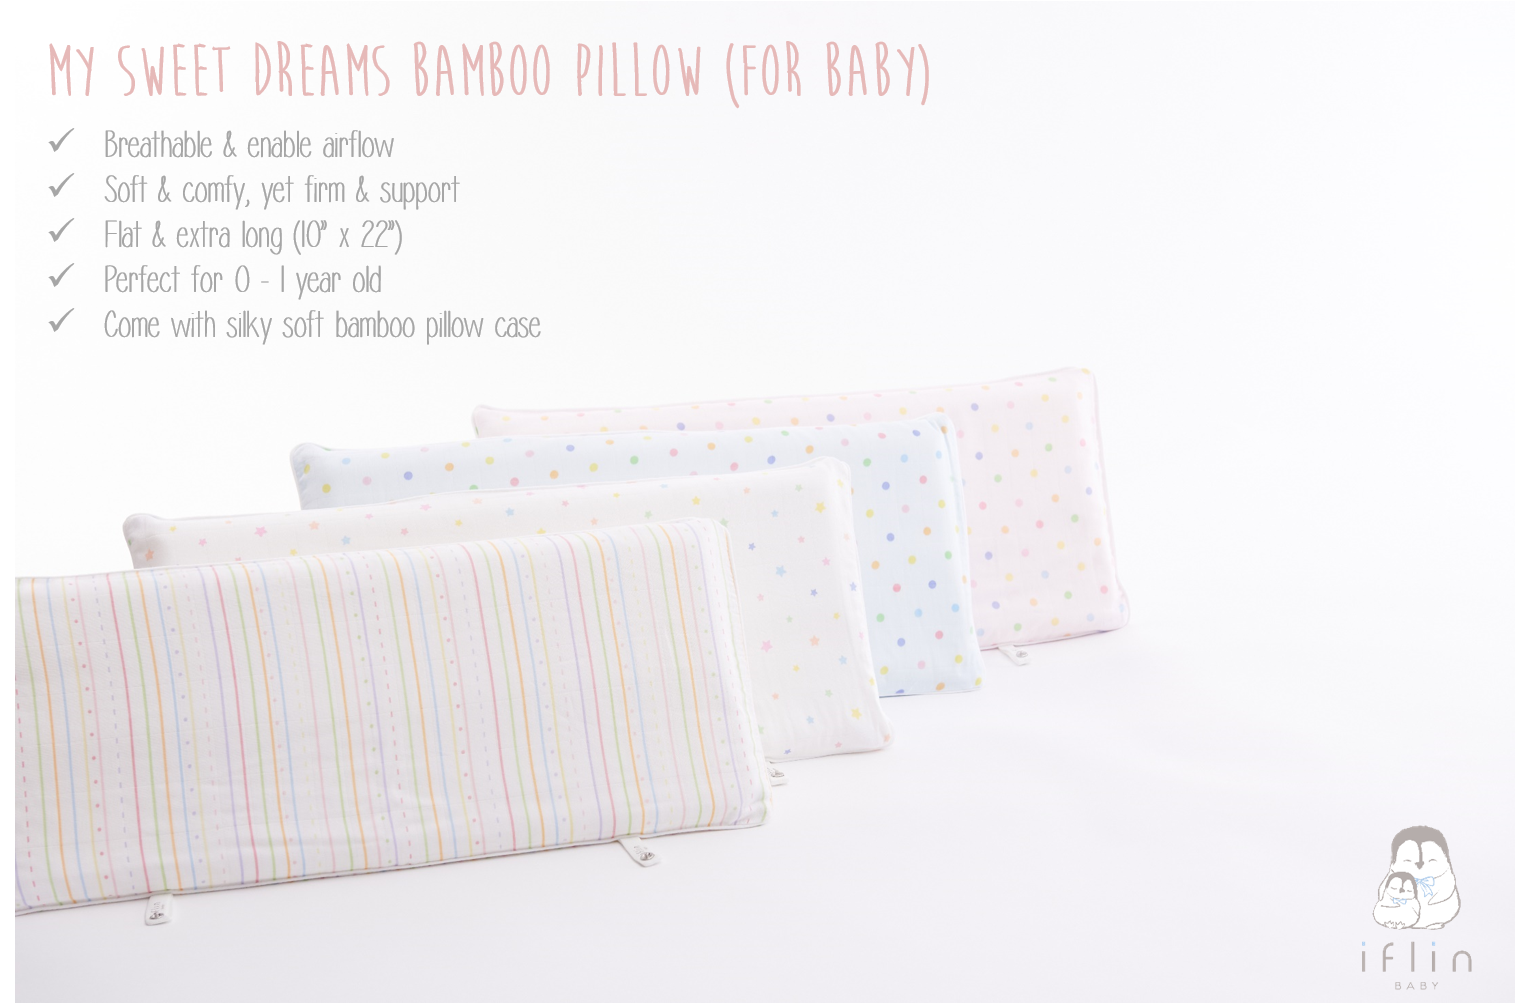 ซื้อที่ไหน Iflin Baby - หมอนหนุน+ปลอกหมอนใยไผ่ สำหรับเด็กแรกเกิด (My Sweet Dreams Bamboo Pillow for Baby) - ของใช้เด็กอ่อน